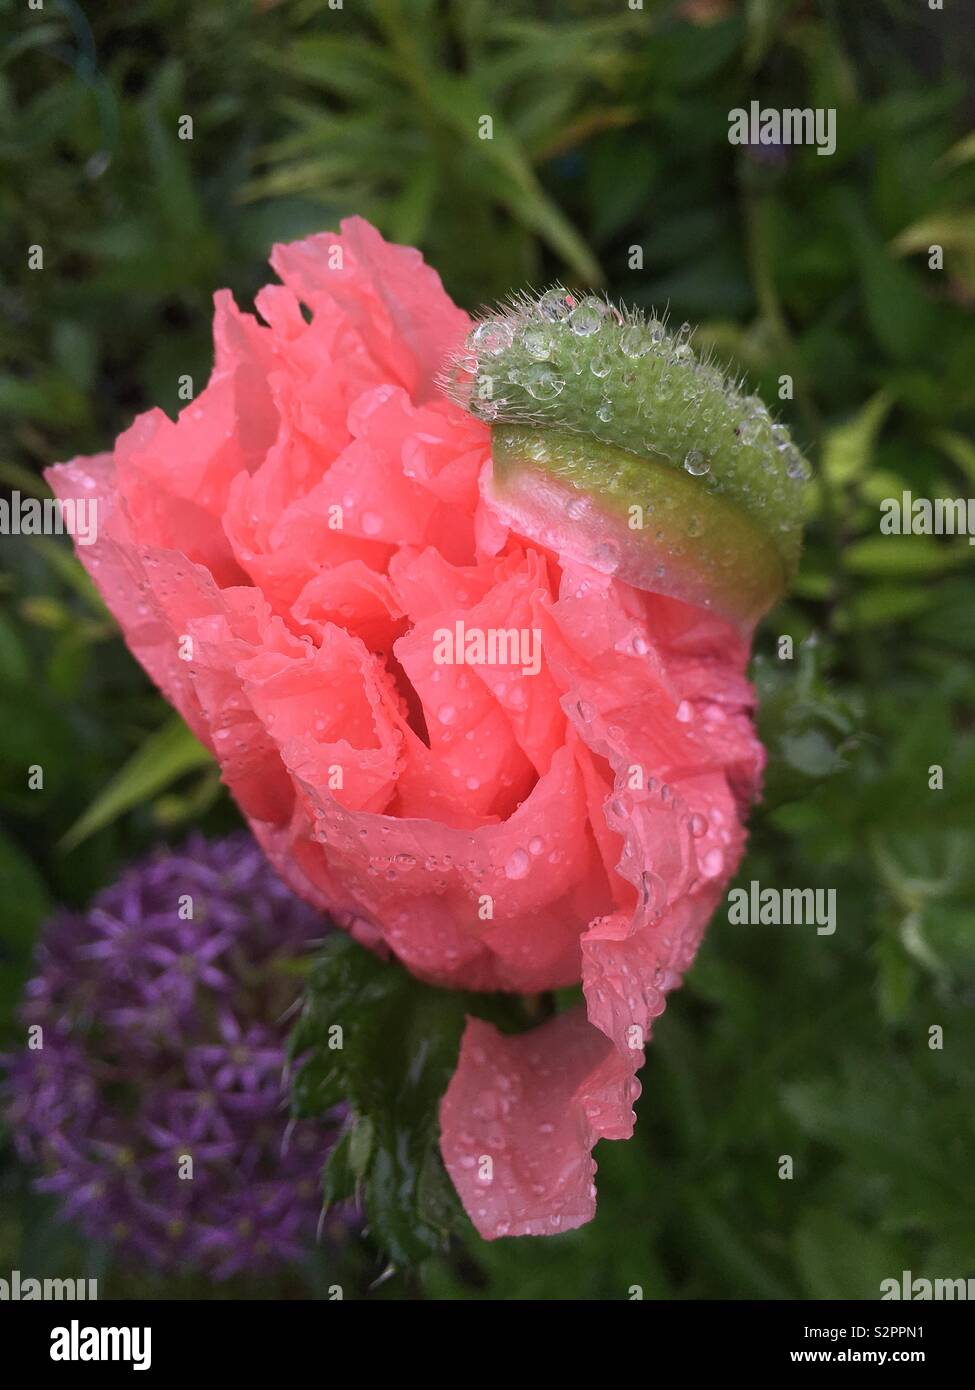 Rosa bagnata immagini e fotografie stock ad alta risoluzione - Alamy